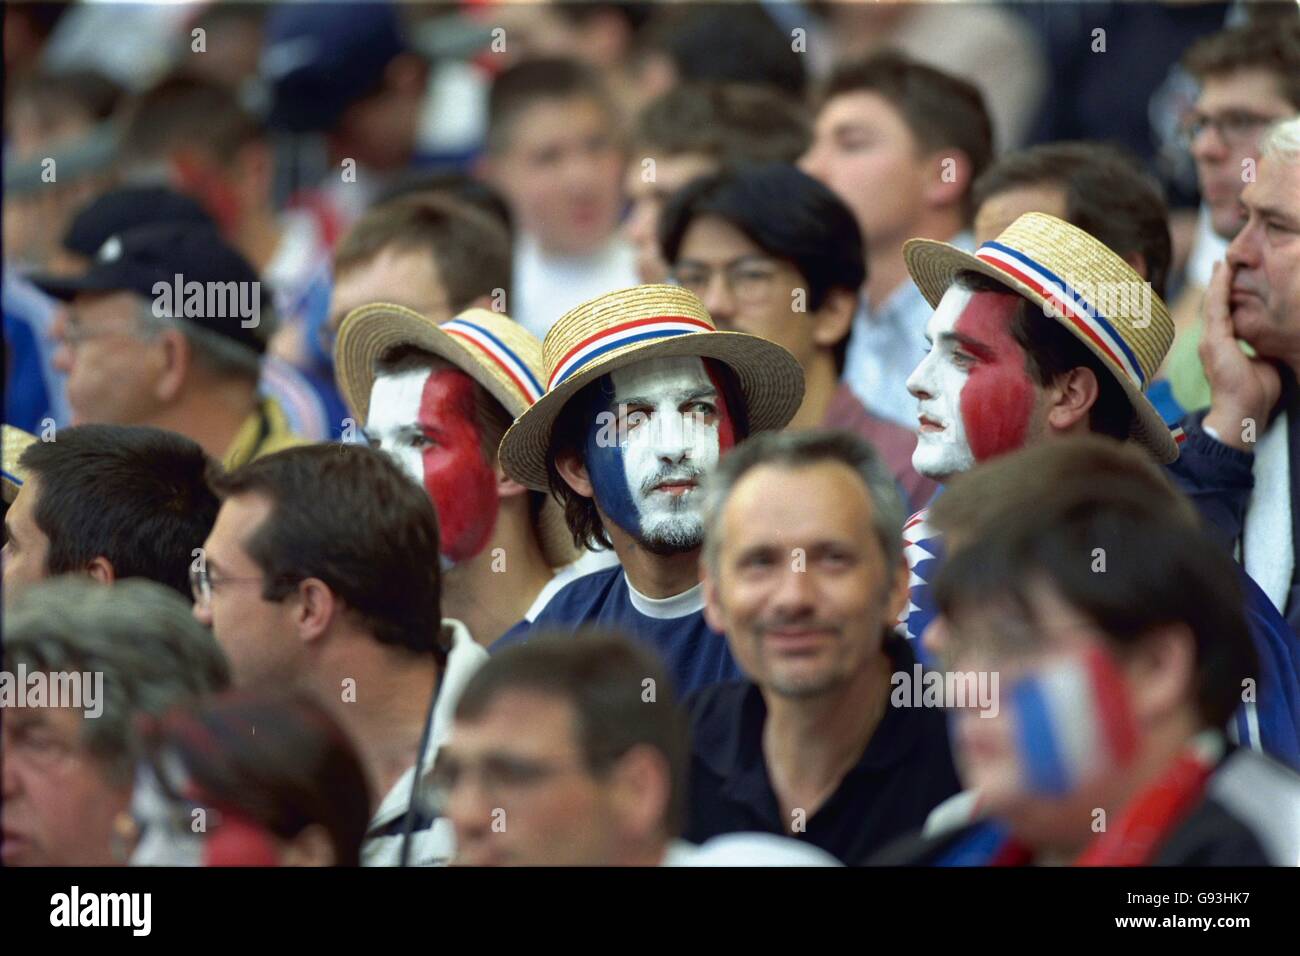 Calcio - Coppa del mondo Francia 98 - Gruppo C - Francia contro Arabia Saudita. Francia tifosi in paglia boaters Foto Stock